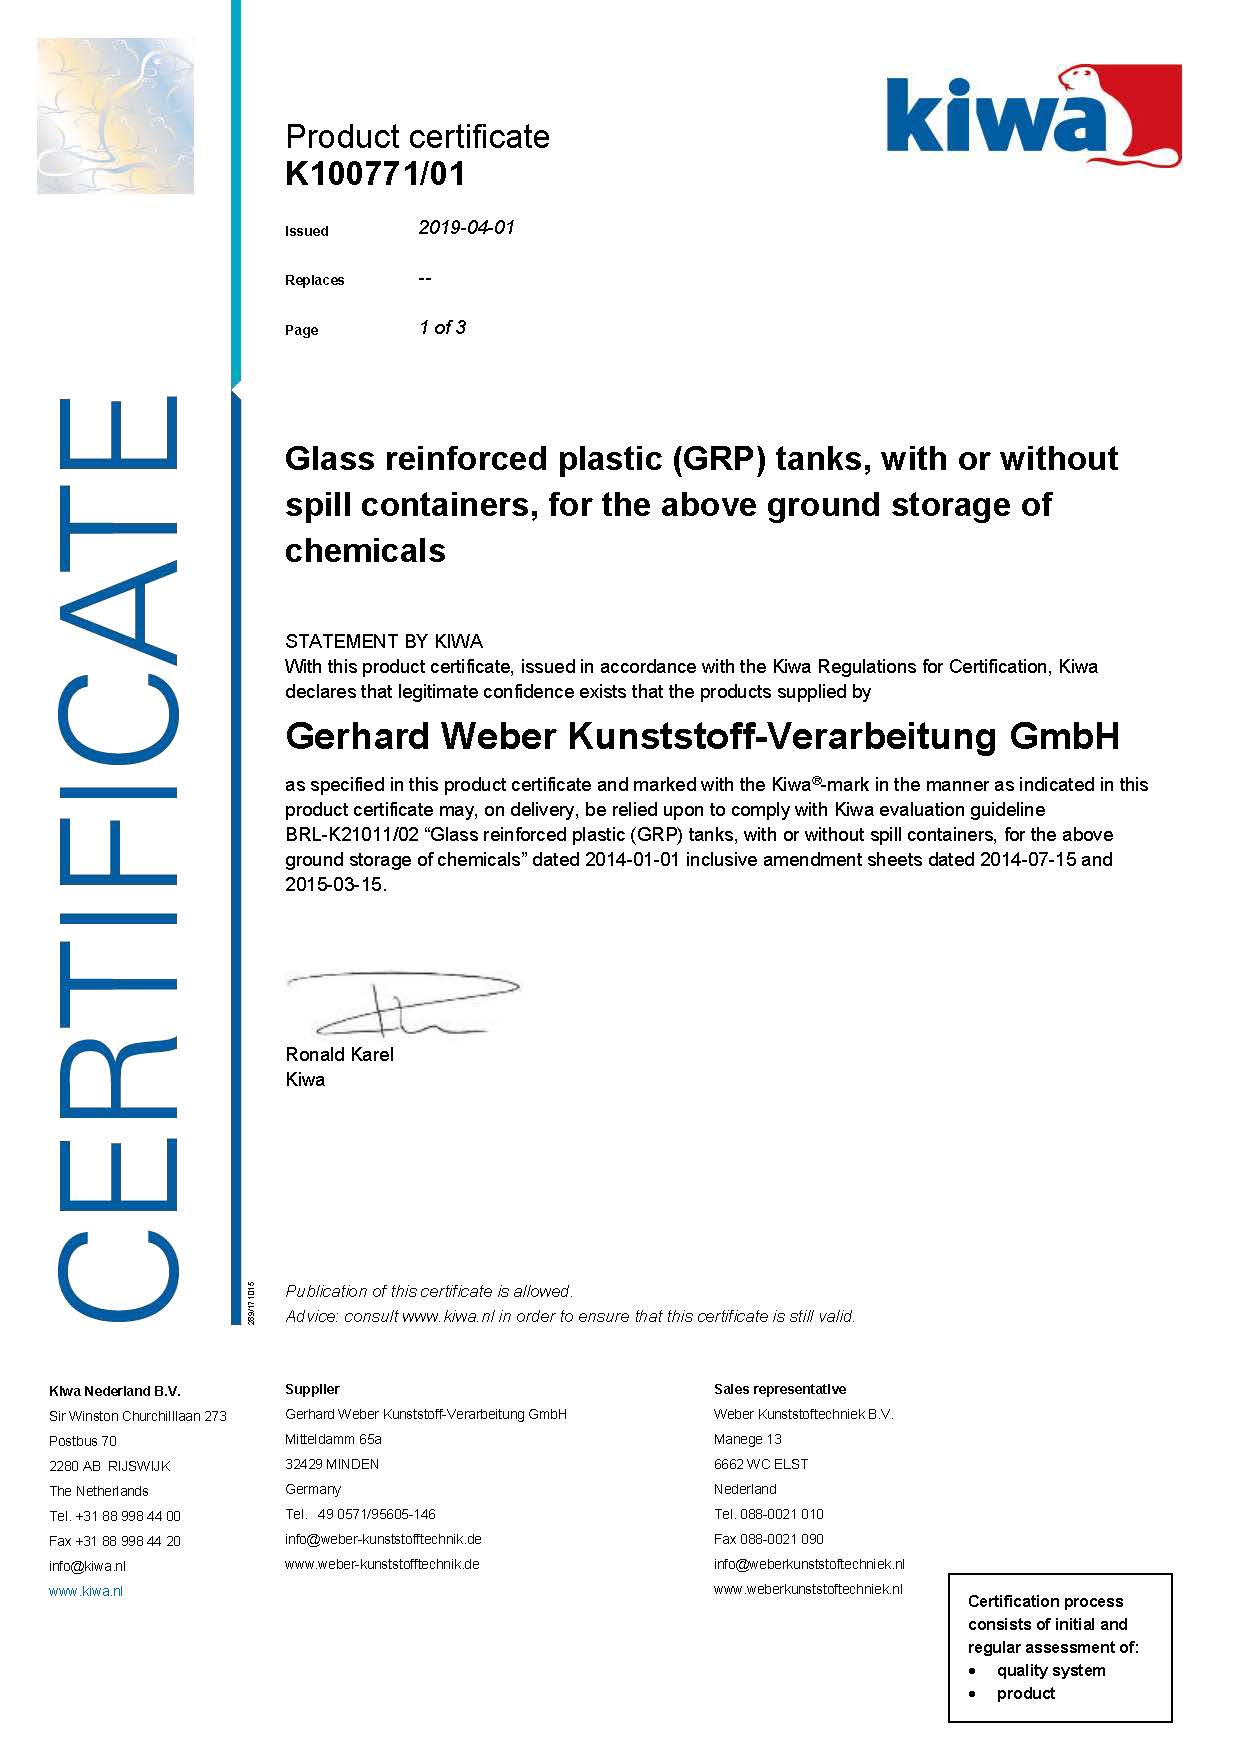 Gerhard Weber Kunststoff verarbeitung GmbH Certificate K21011